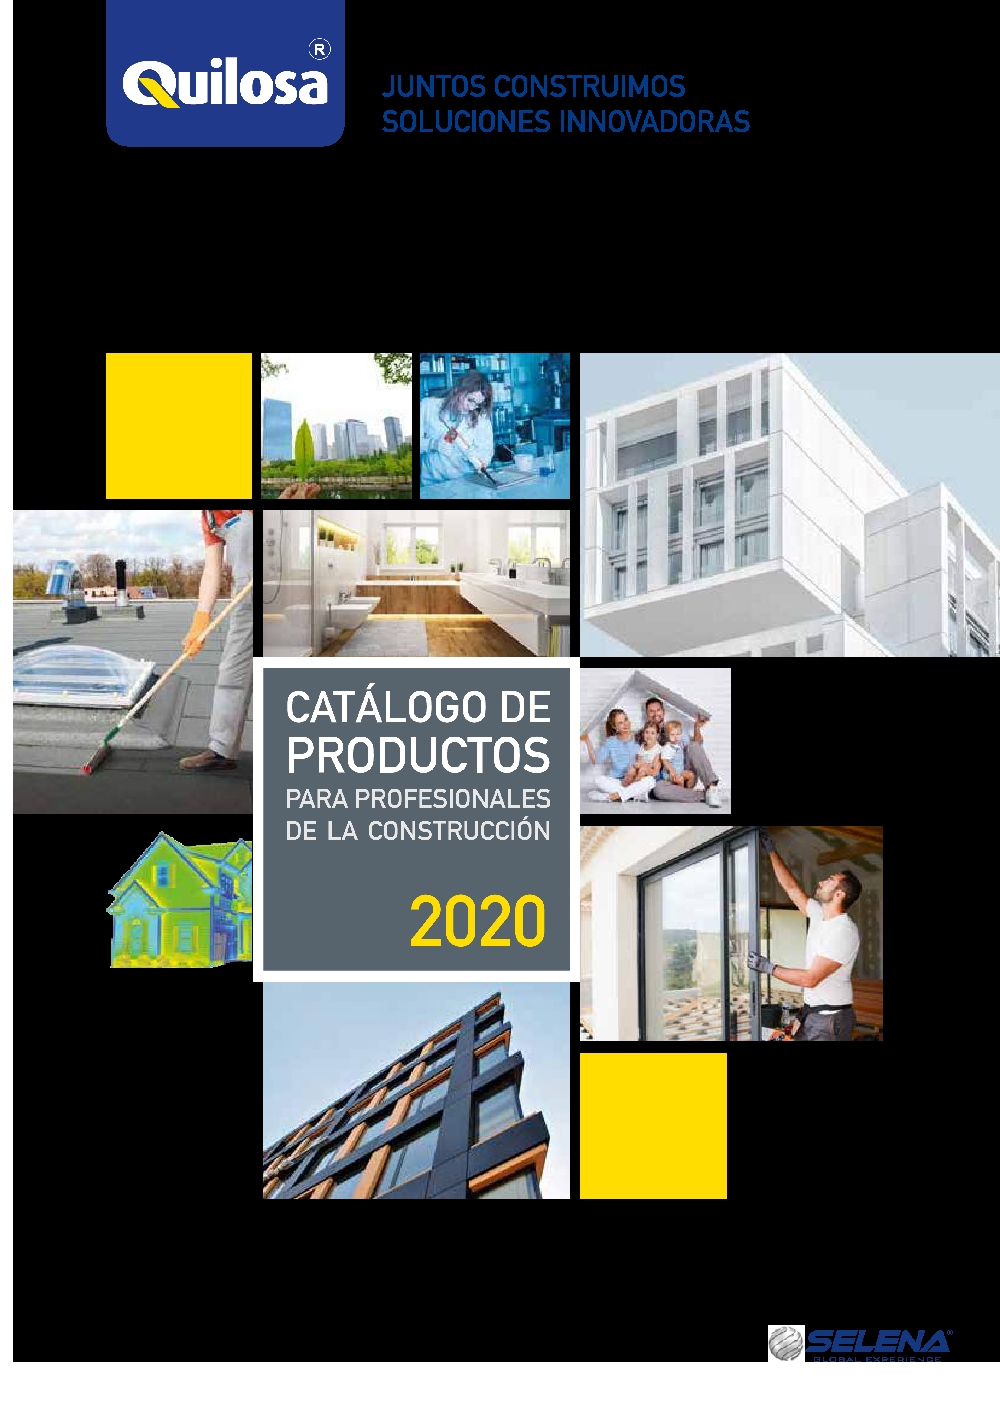 Quilosa Catálogo 2020